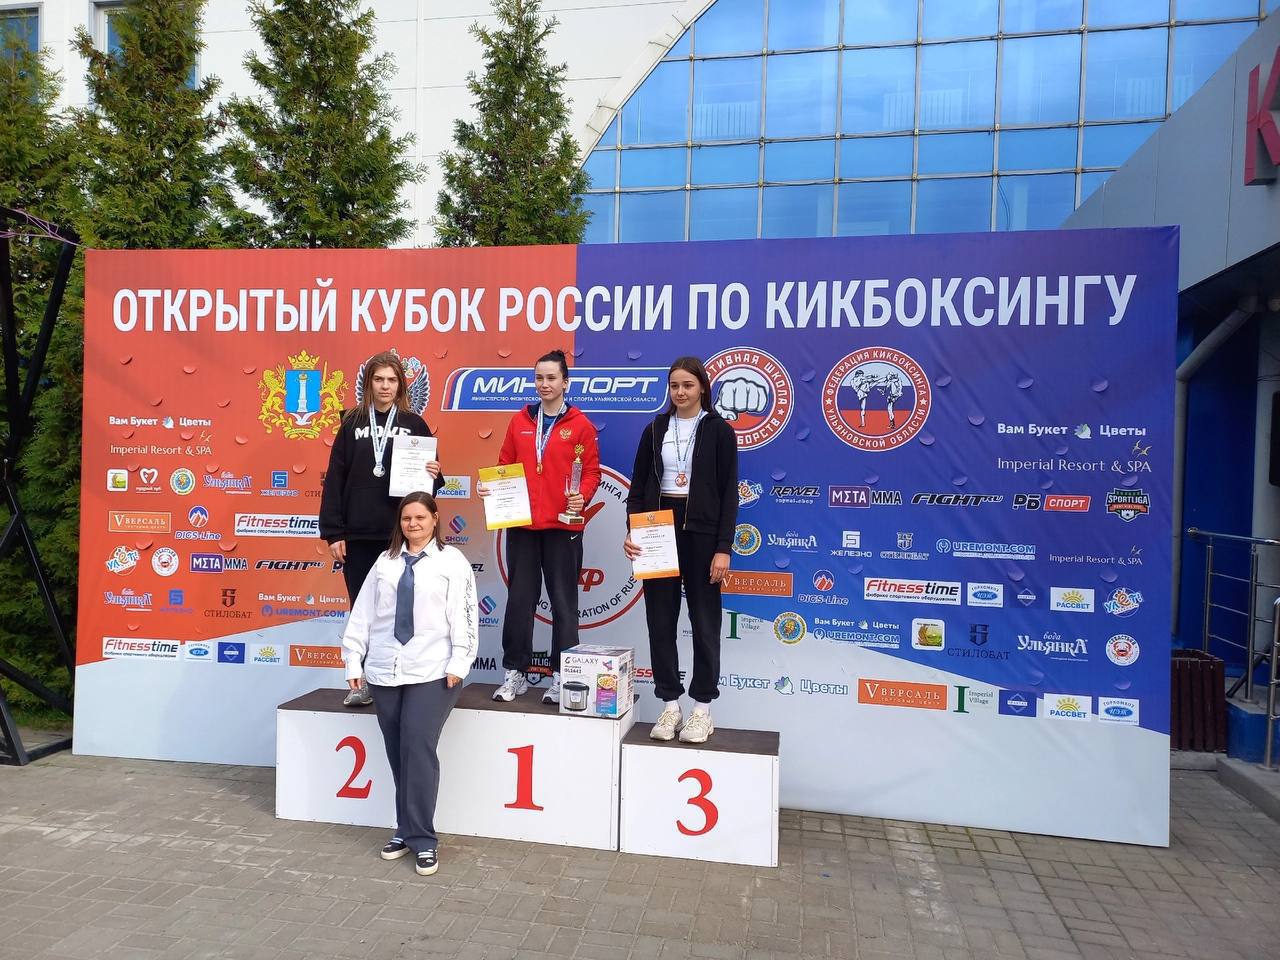 Ярославские спортсмены вернулись с наградами с соревнований по кикбоксингу